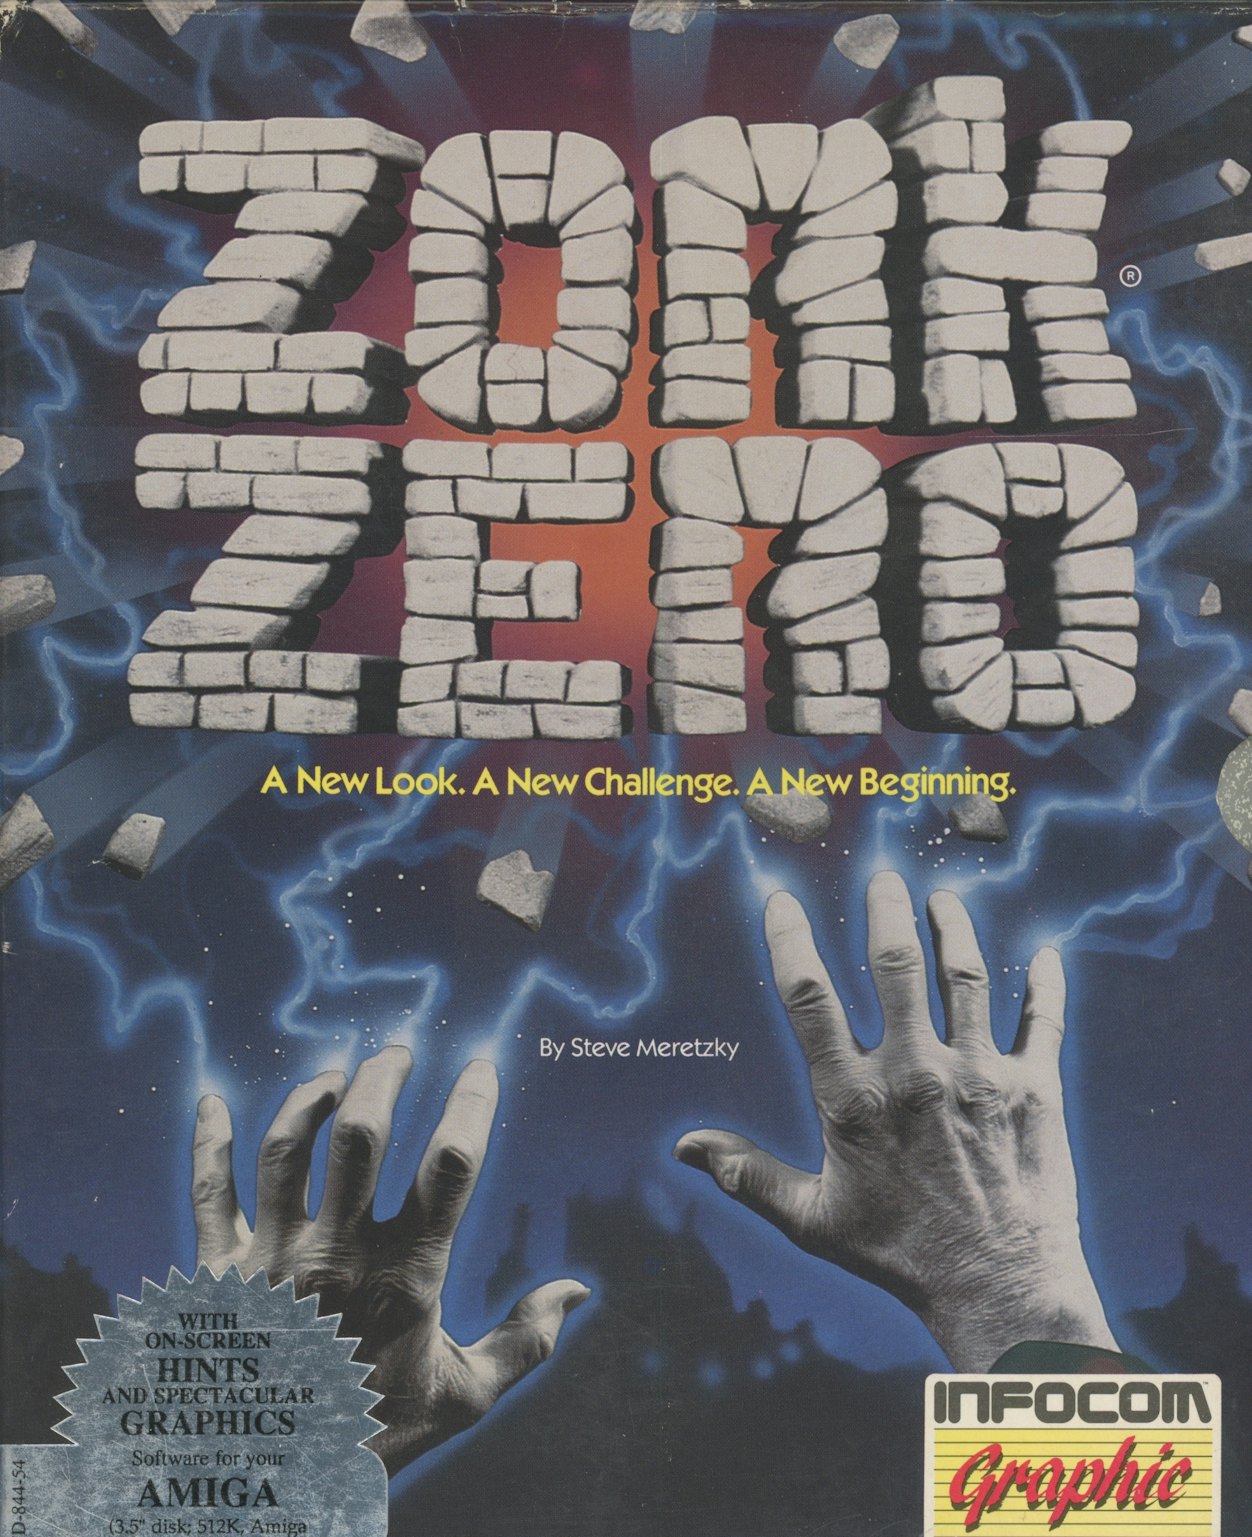 Zork Zero: The Revenge of Megaboz